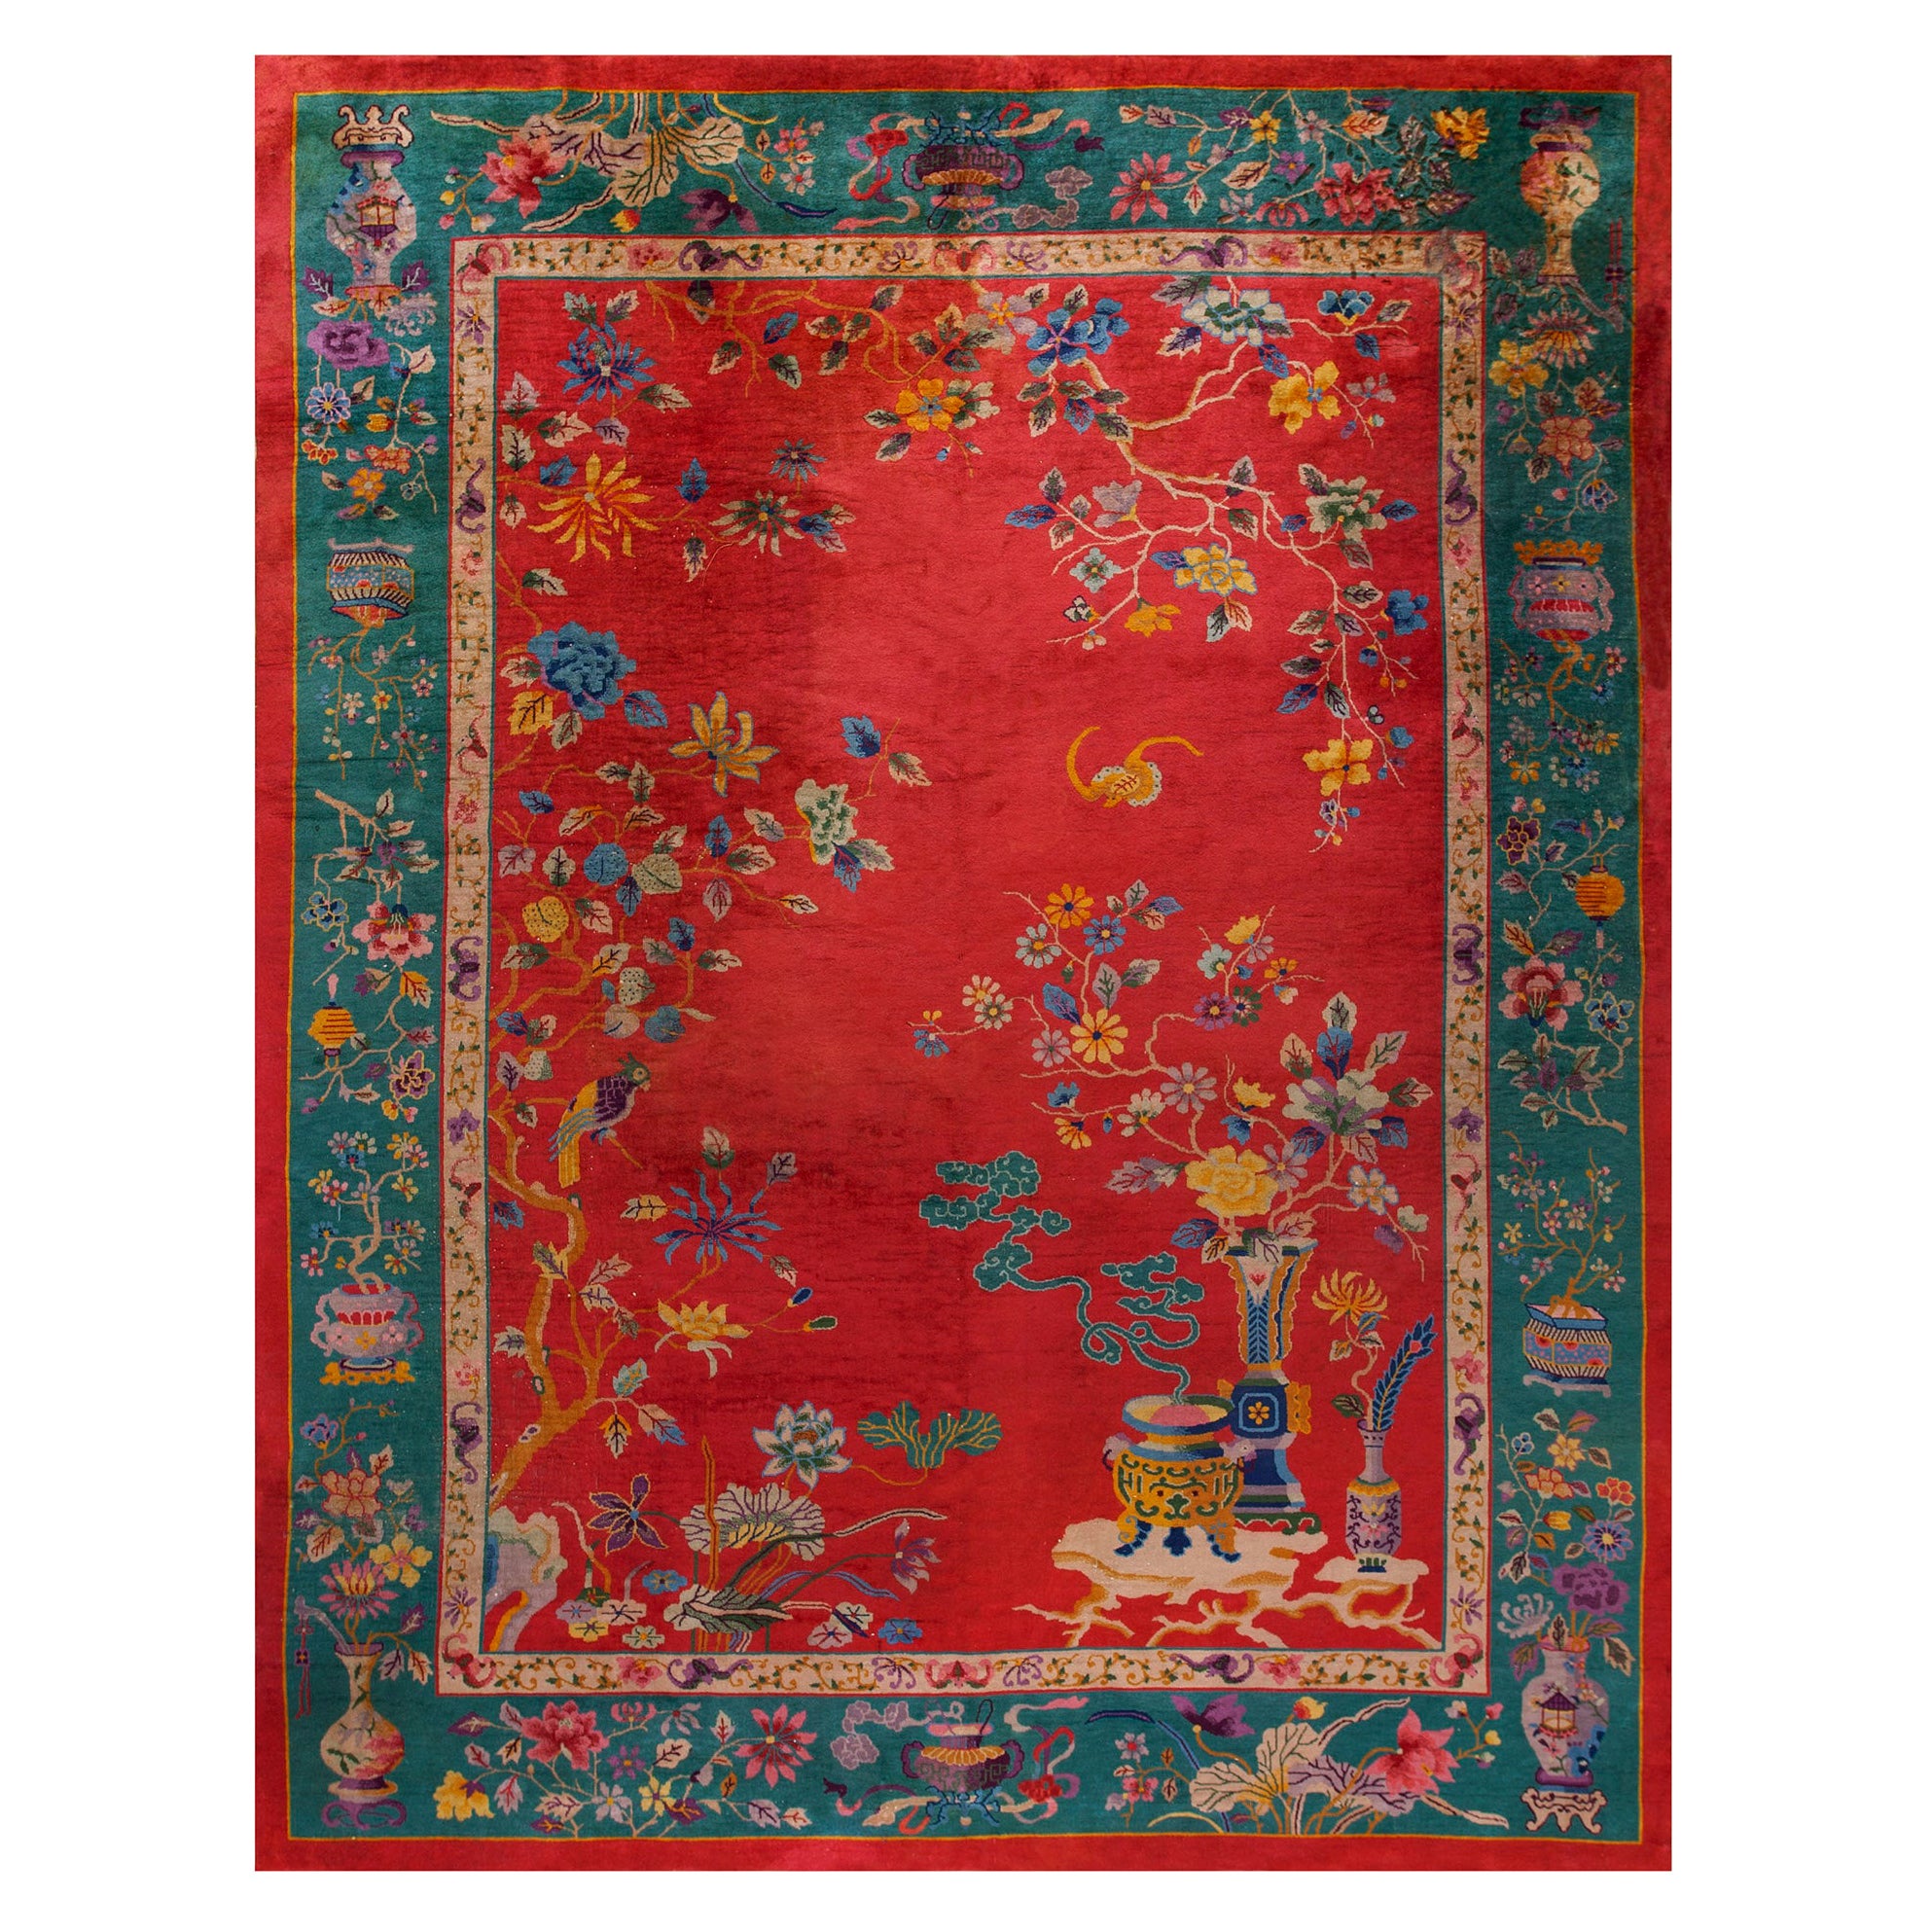 Chinesischer Art-Déco-Teppich aus den 1920er Jahren ( 9' x 11' 8'' – 275 x 355 cm)